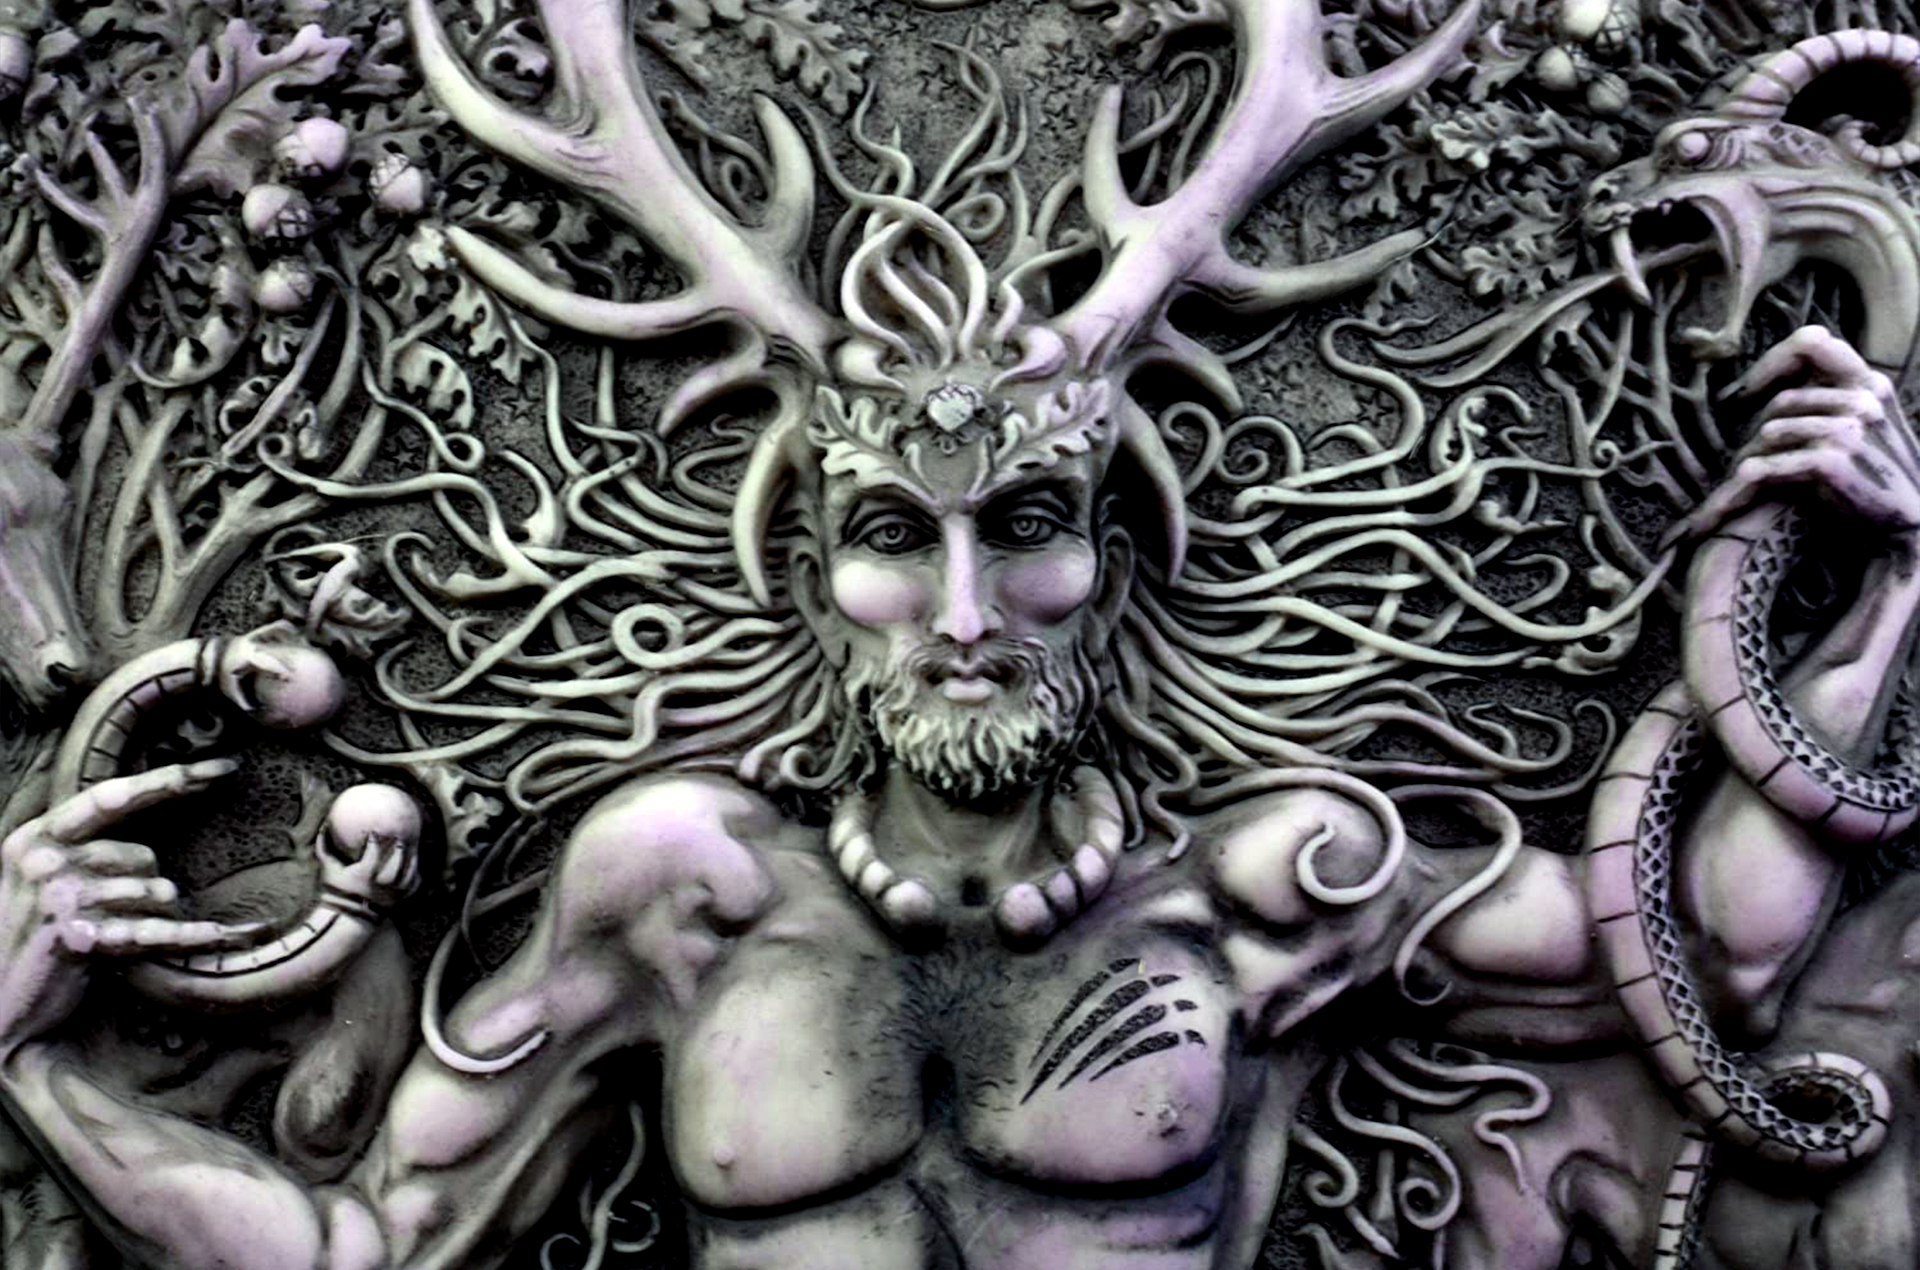 Cernunnos: The Horned God of Celtic Mythology